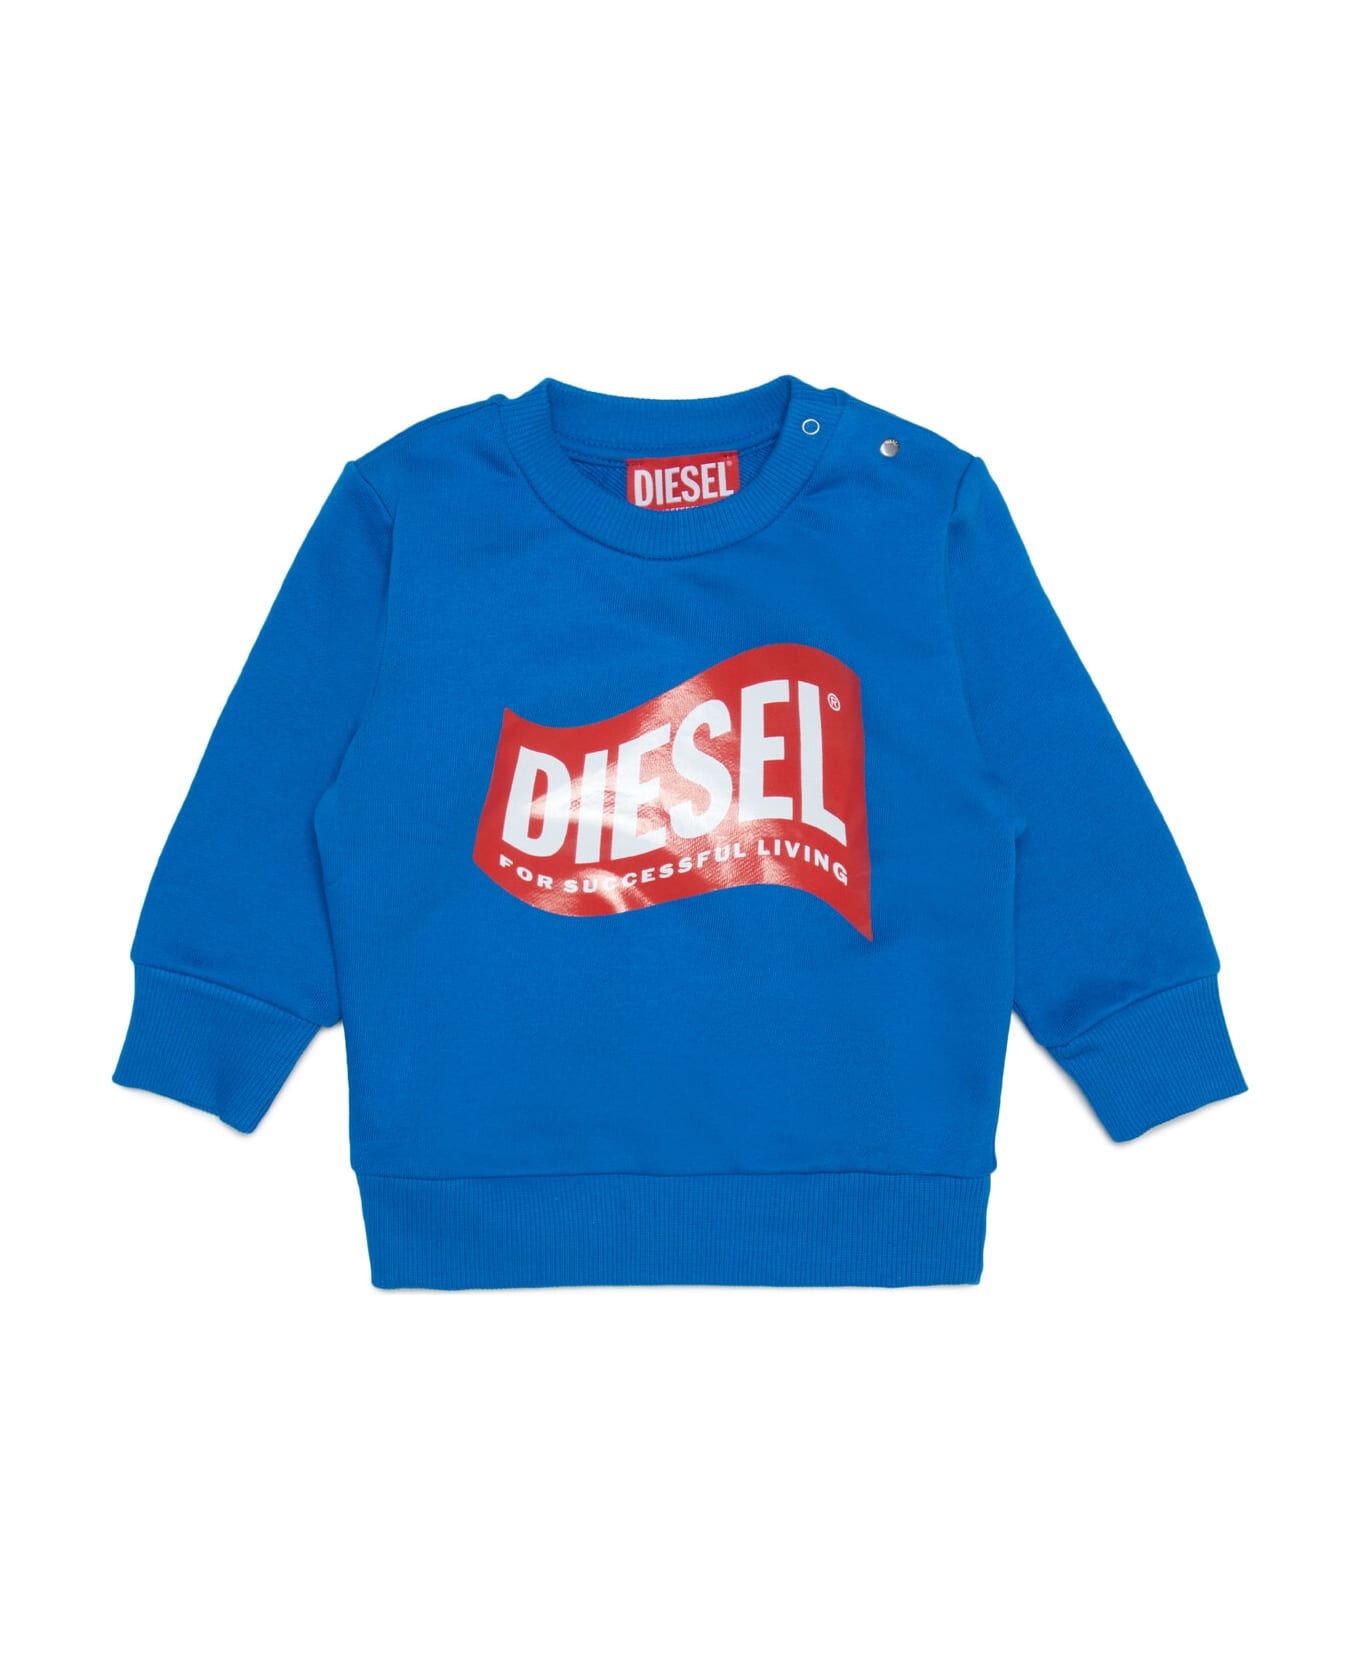 Diesel Sannyb Sweat-shirt Diesel Blue Crew-neck Cotton Sweatshirt With Logo In 'wave' Version - Princess blue